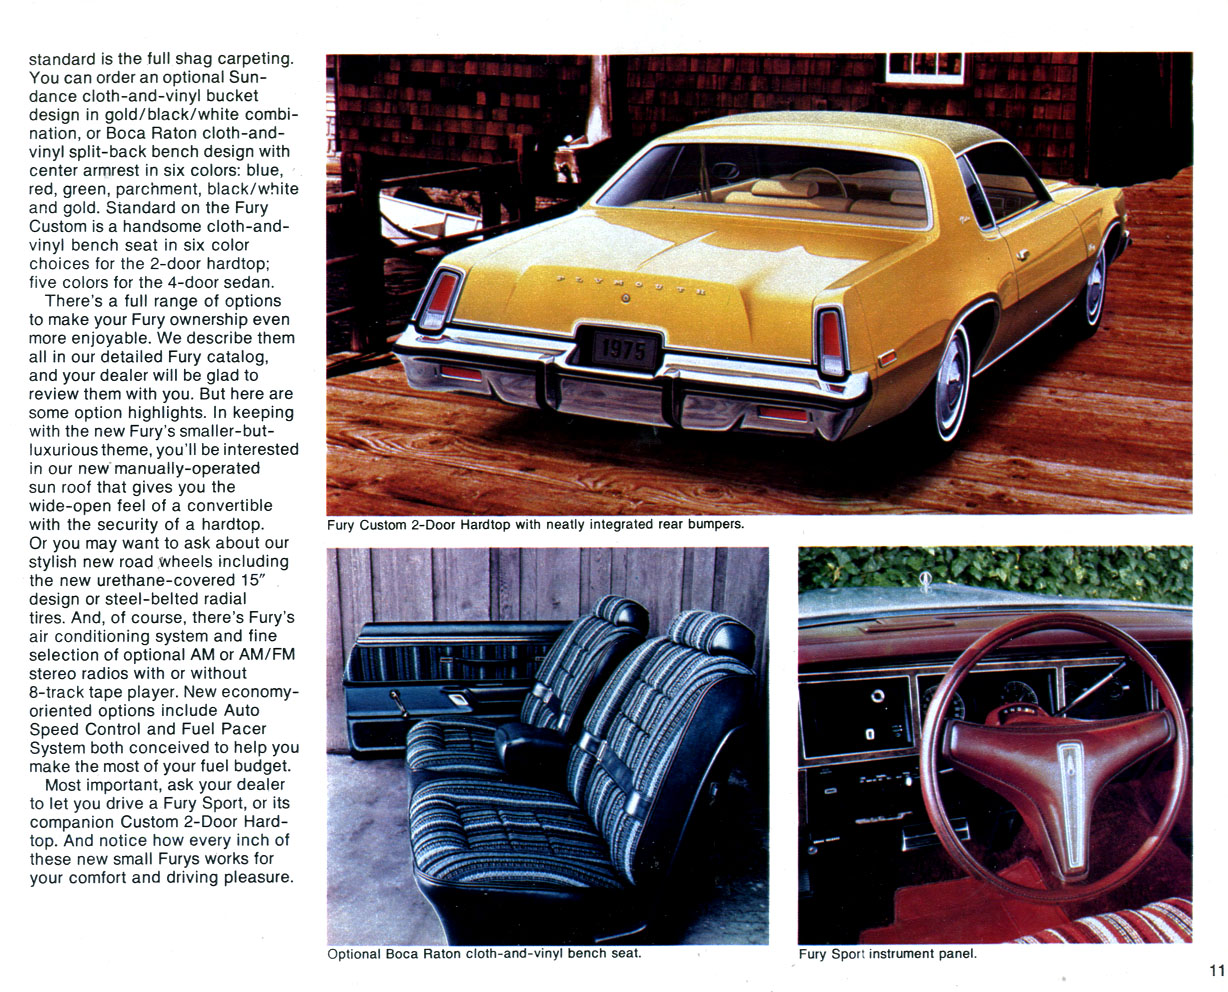 1975_Chrysler-Plymouth-11